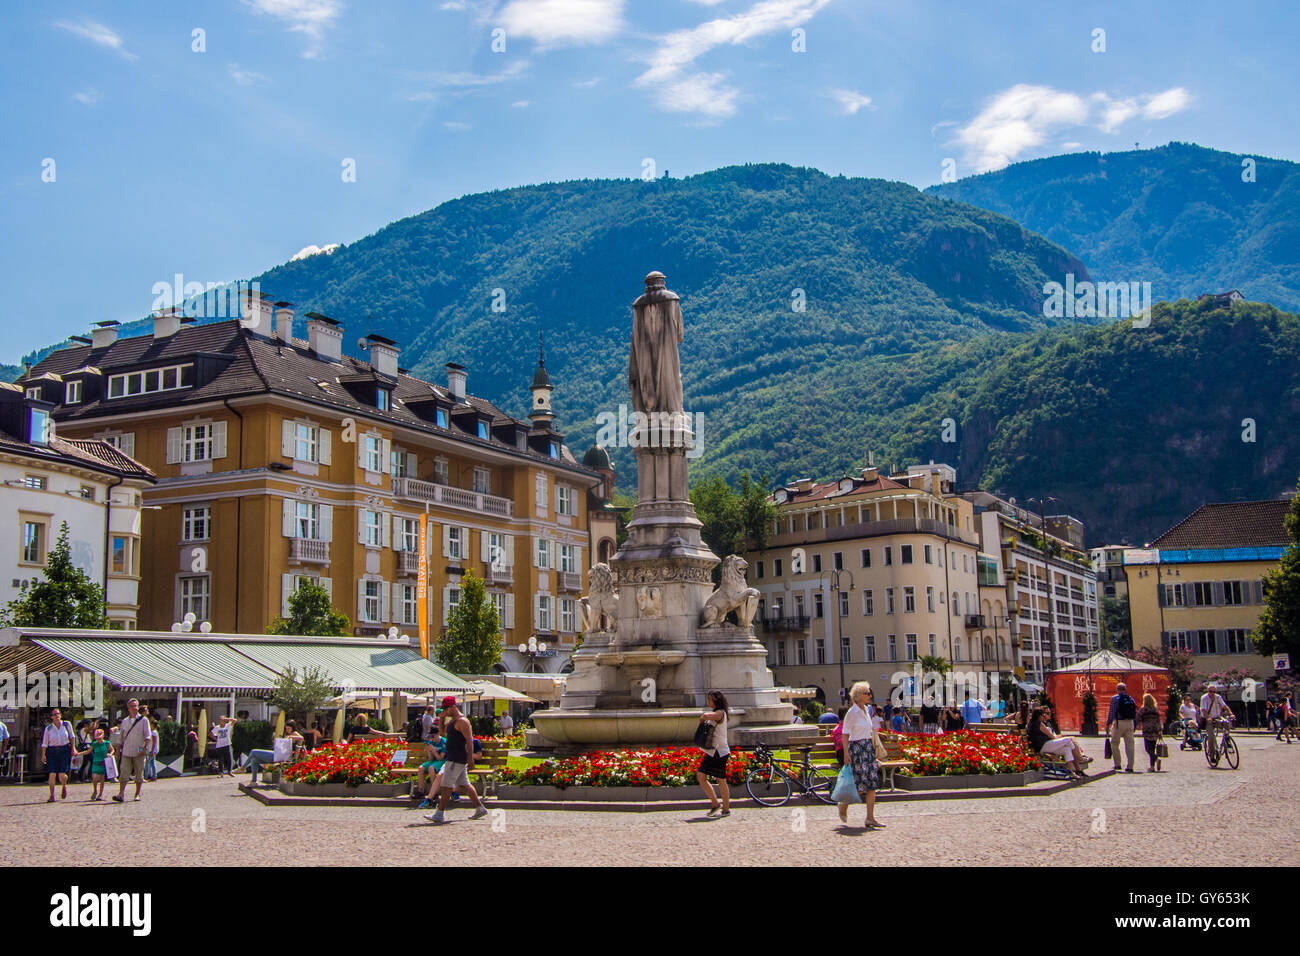 Bozen Stadt und die Statue von Walther von der Vogelweide, Provinz Bozen, Trentino-Südtirol, Italien. Stockfoto